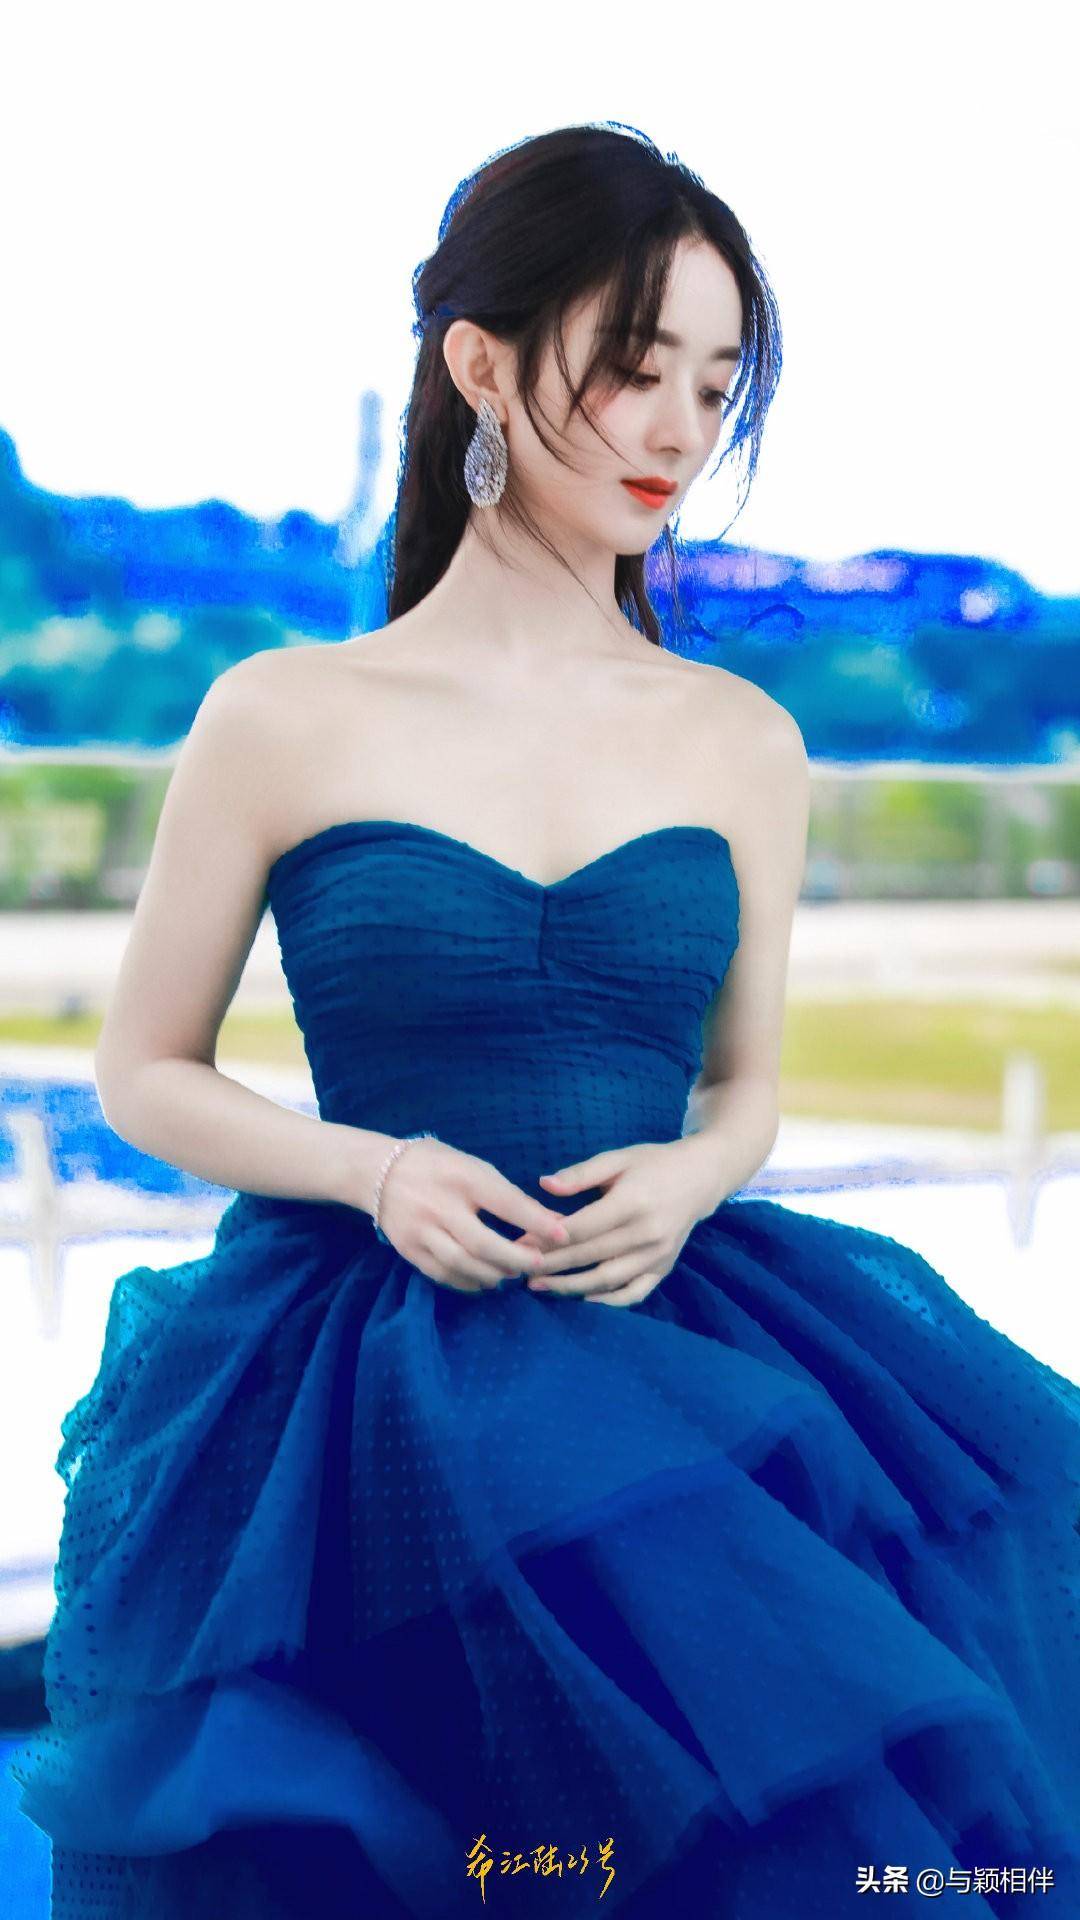 赵丽颖蓝色蛋糕裙p成7种颜色,你觉得哪种更好看红色太美了